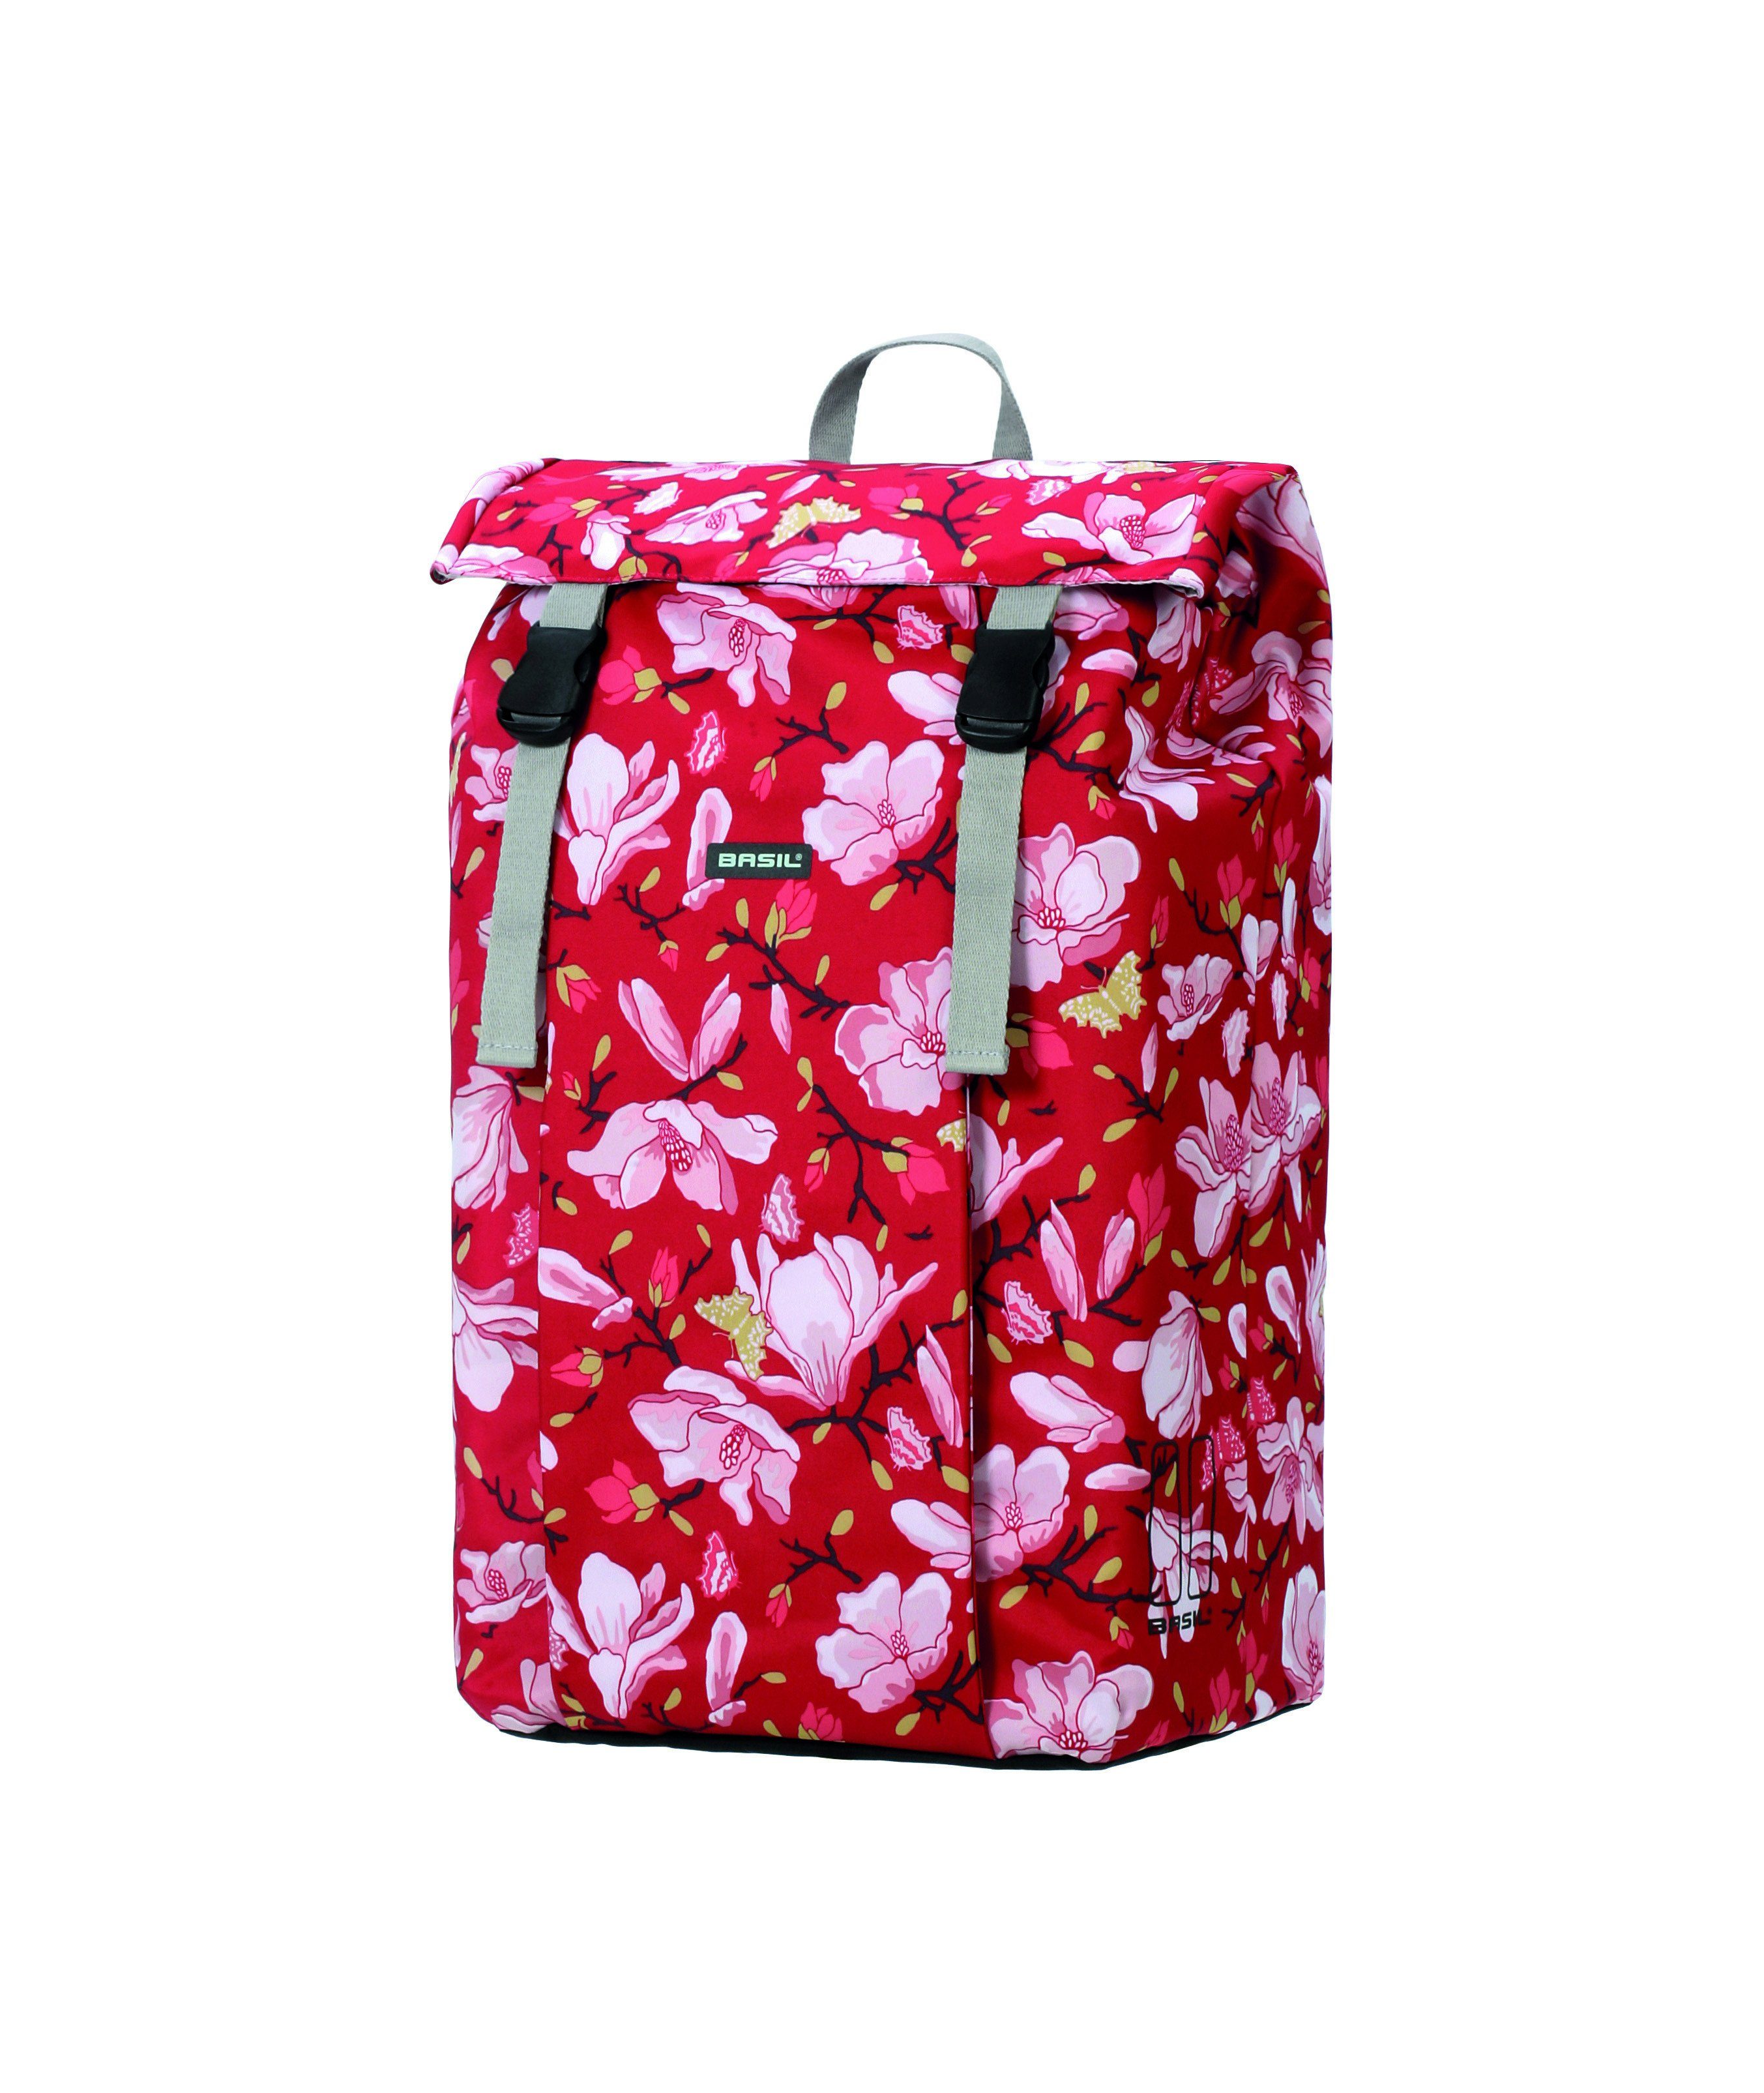 Andersen Einkaufstrolley »Shopper Tasche Basil Magnolia in Grau, Rosa, Rot oder Blau« online